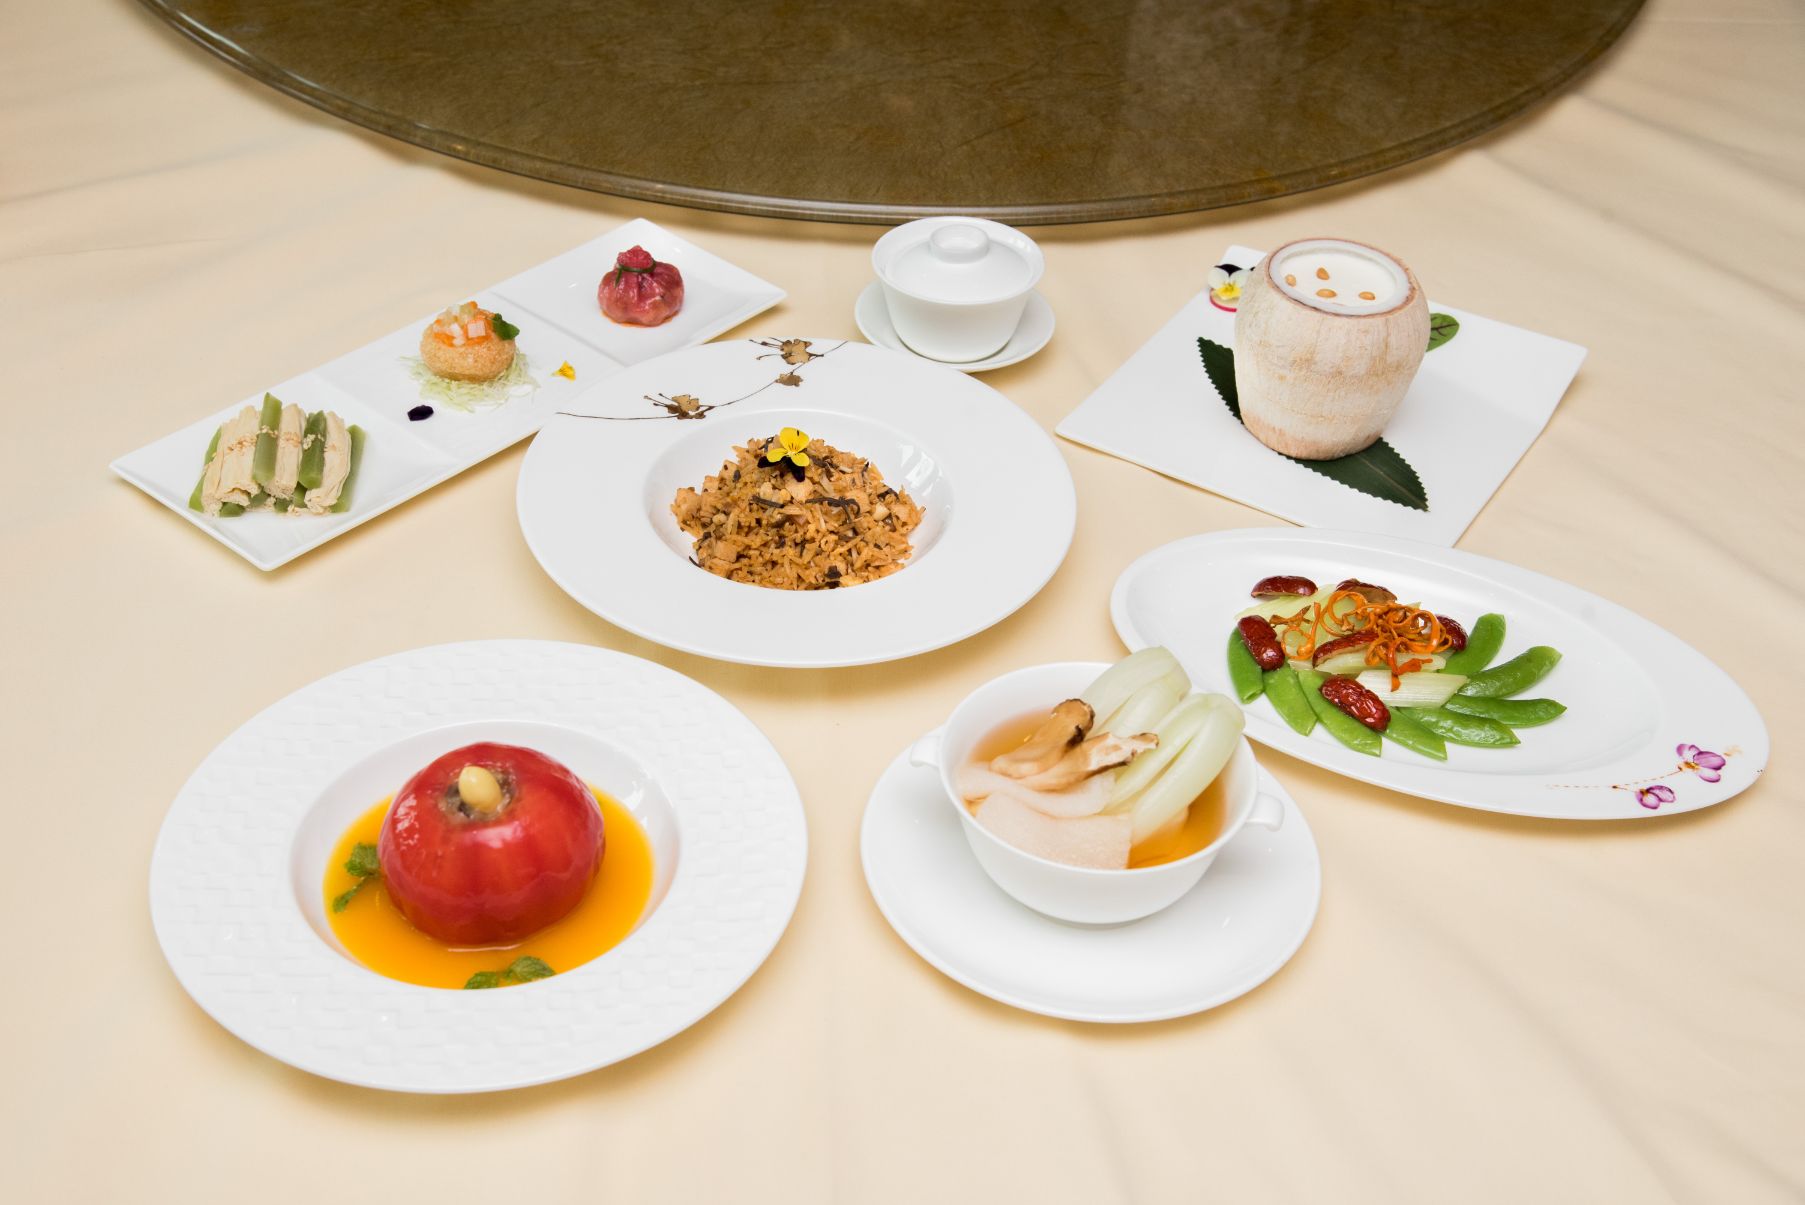 LONG TRIỀU Set Chay Long Trieu Phong phú ẩm thực chay mùa Vu Lan tại các nhà hàng của tập đoàn WMC